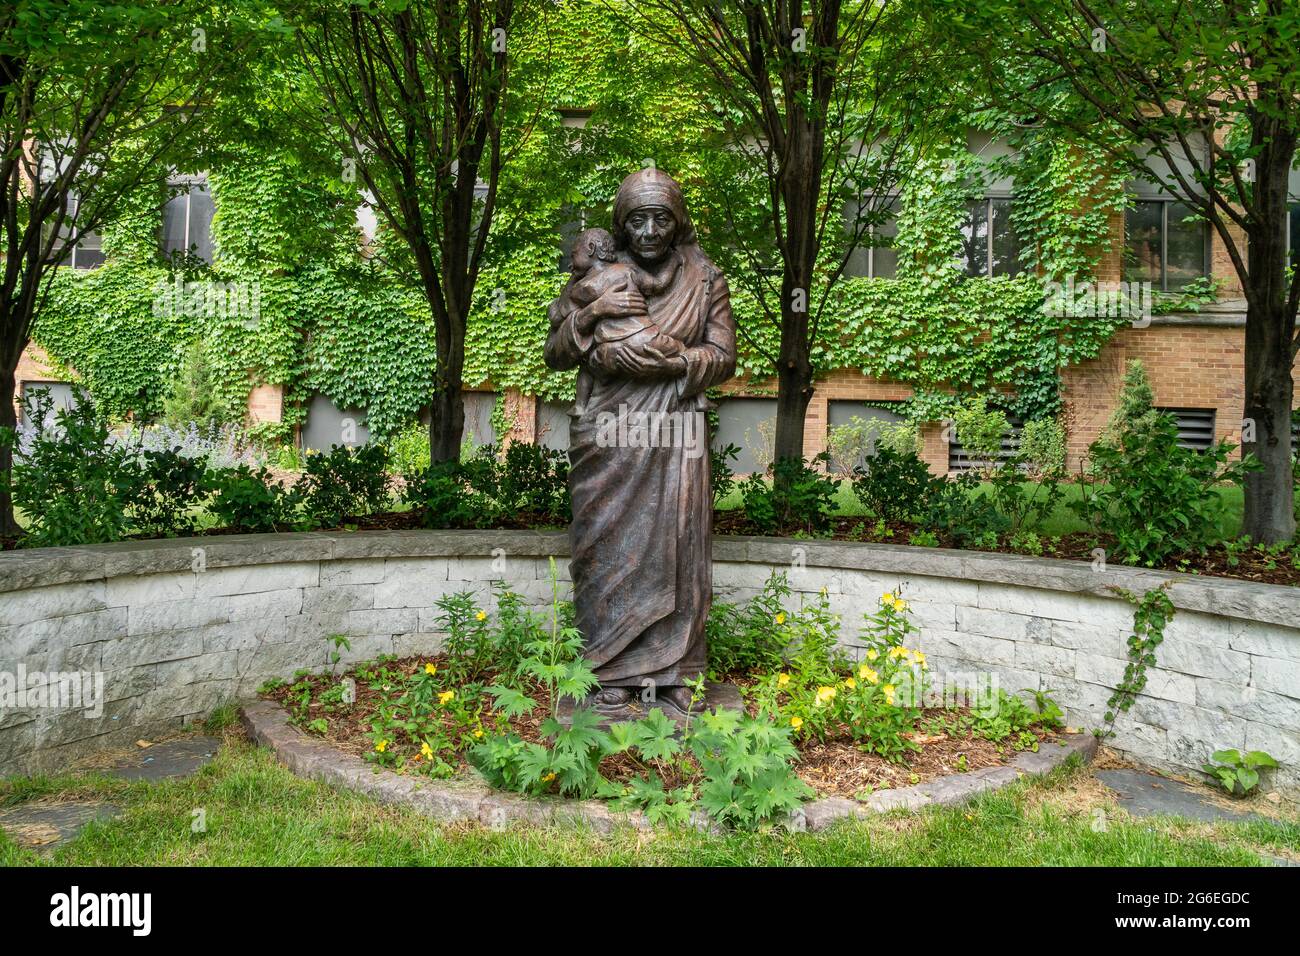 MILWAUKEE, WI, USA - 19. JUNI 2021 -Mutter Teresa von Kalkutta Skulptur auf dem Campus der Marquette University. Stockfoto